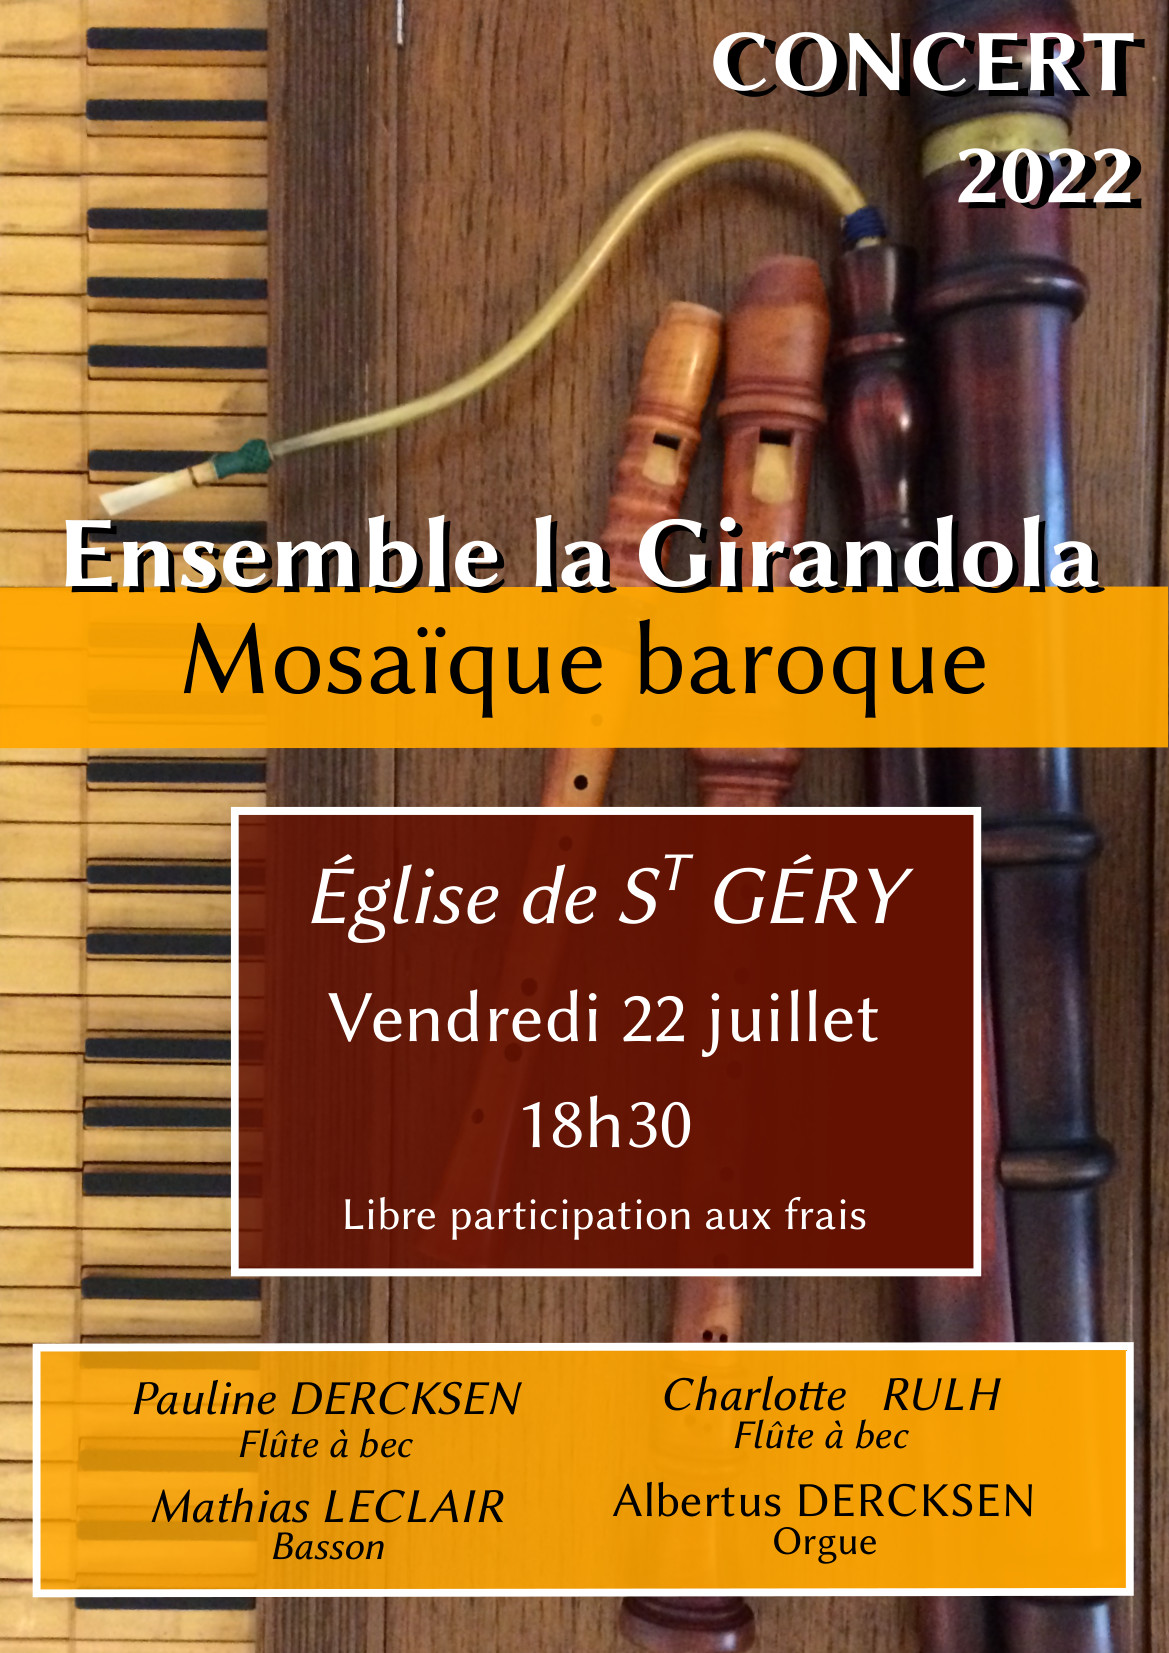 Figeac : Concert La Girandola à Saint-Géry